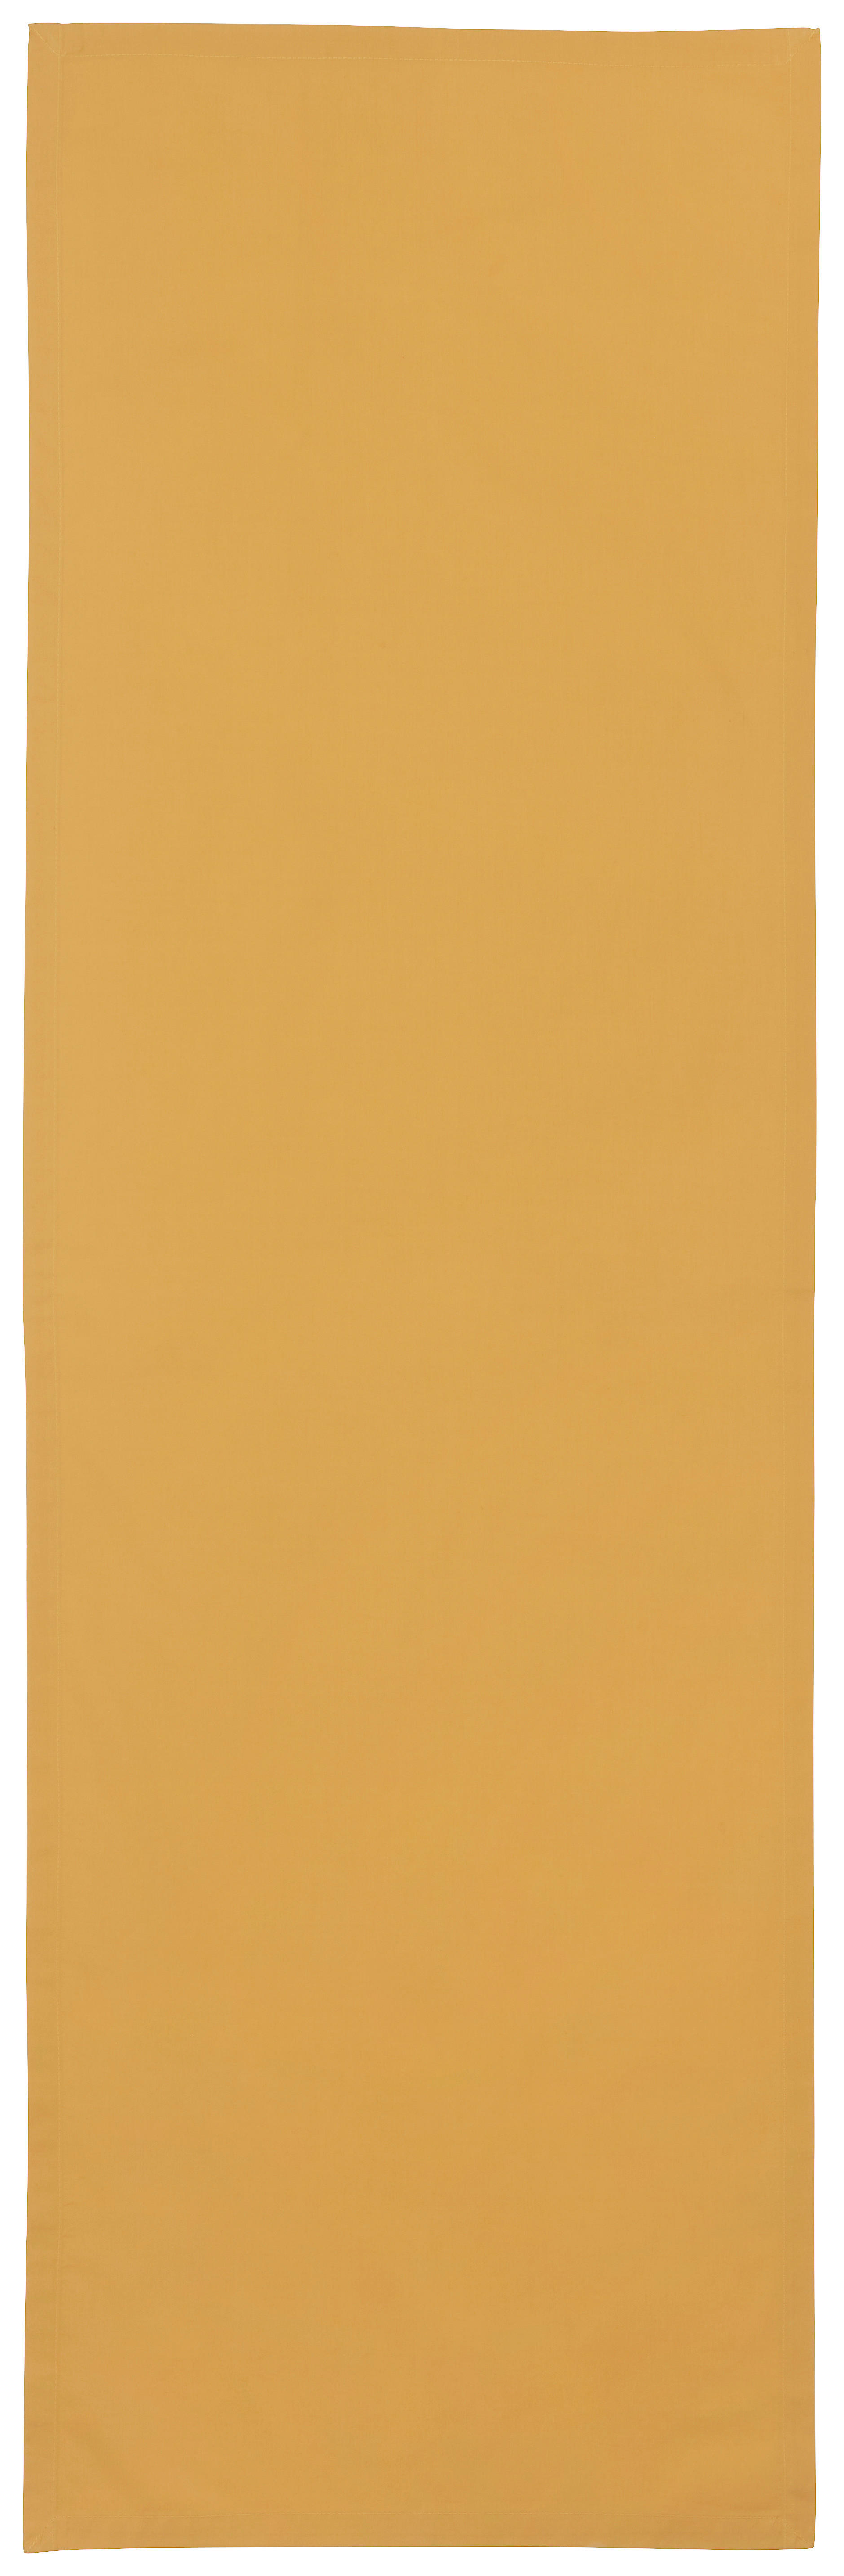 TISCHLÄUFER 45/150 cm   - Gelb, Basics, Textil (45/150cm) - Bio:Vio